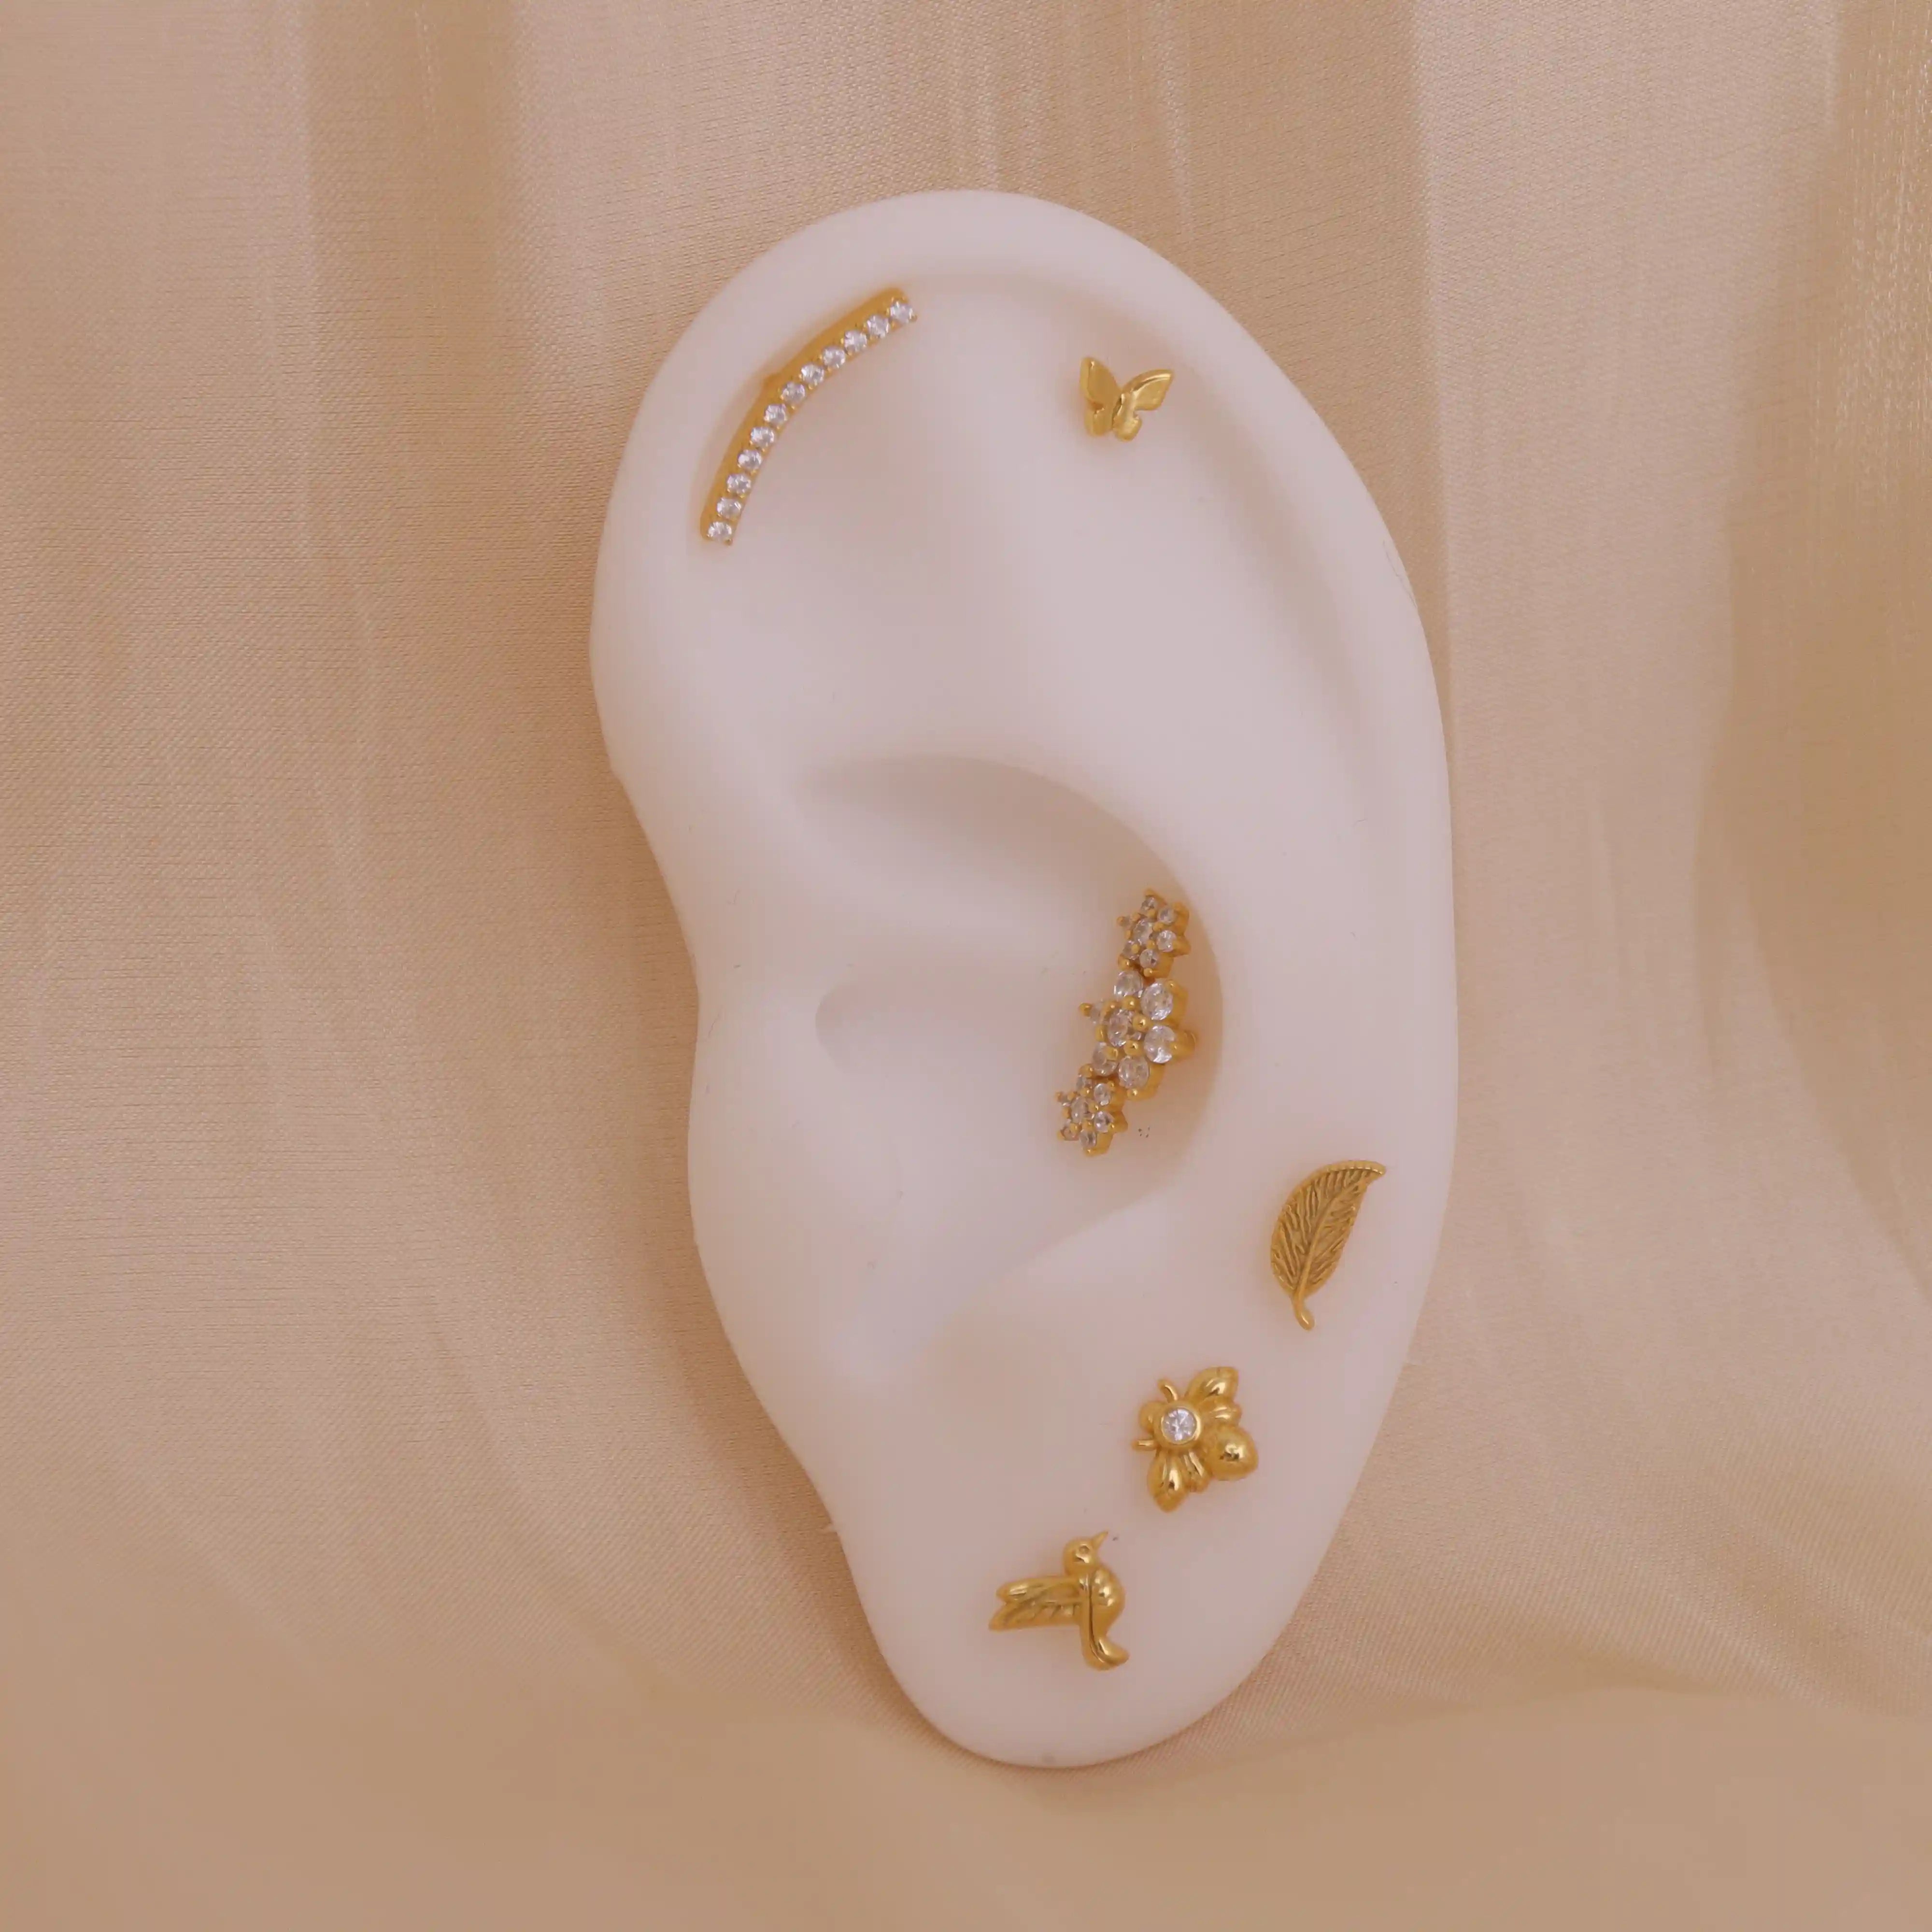 Hidden Helix Flat Back Stud Earring, Cartilage Piercing Jewelry